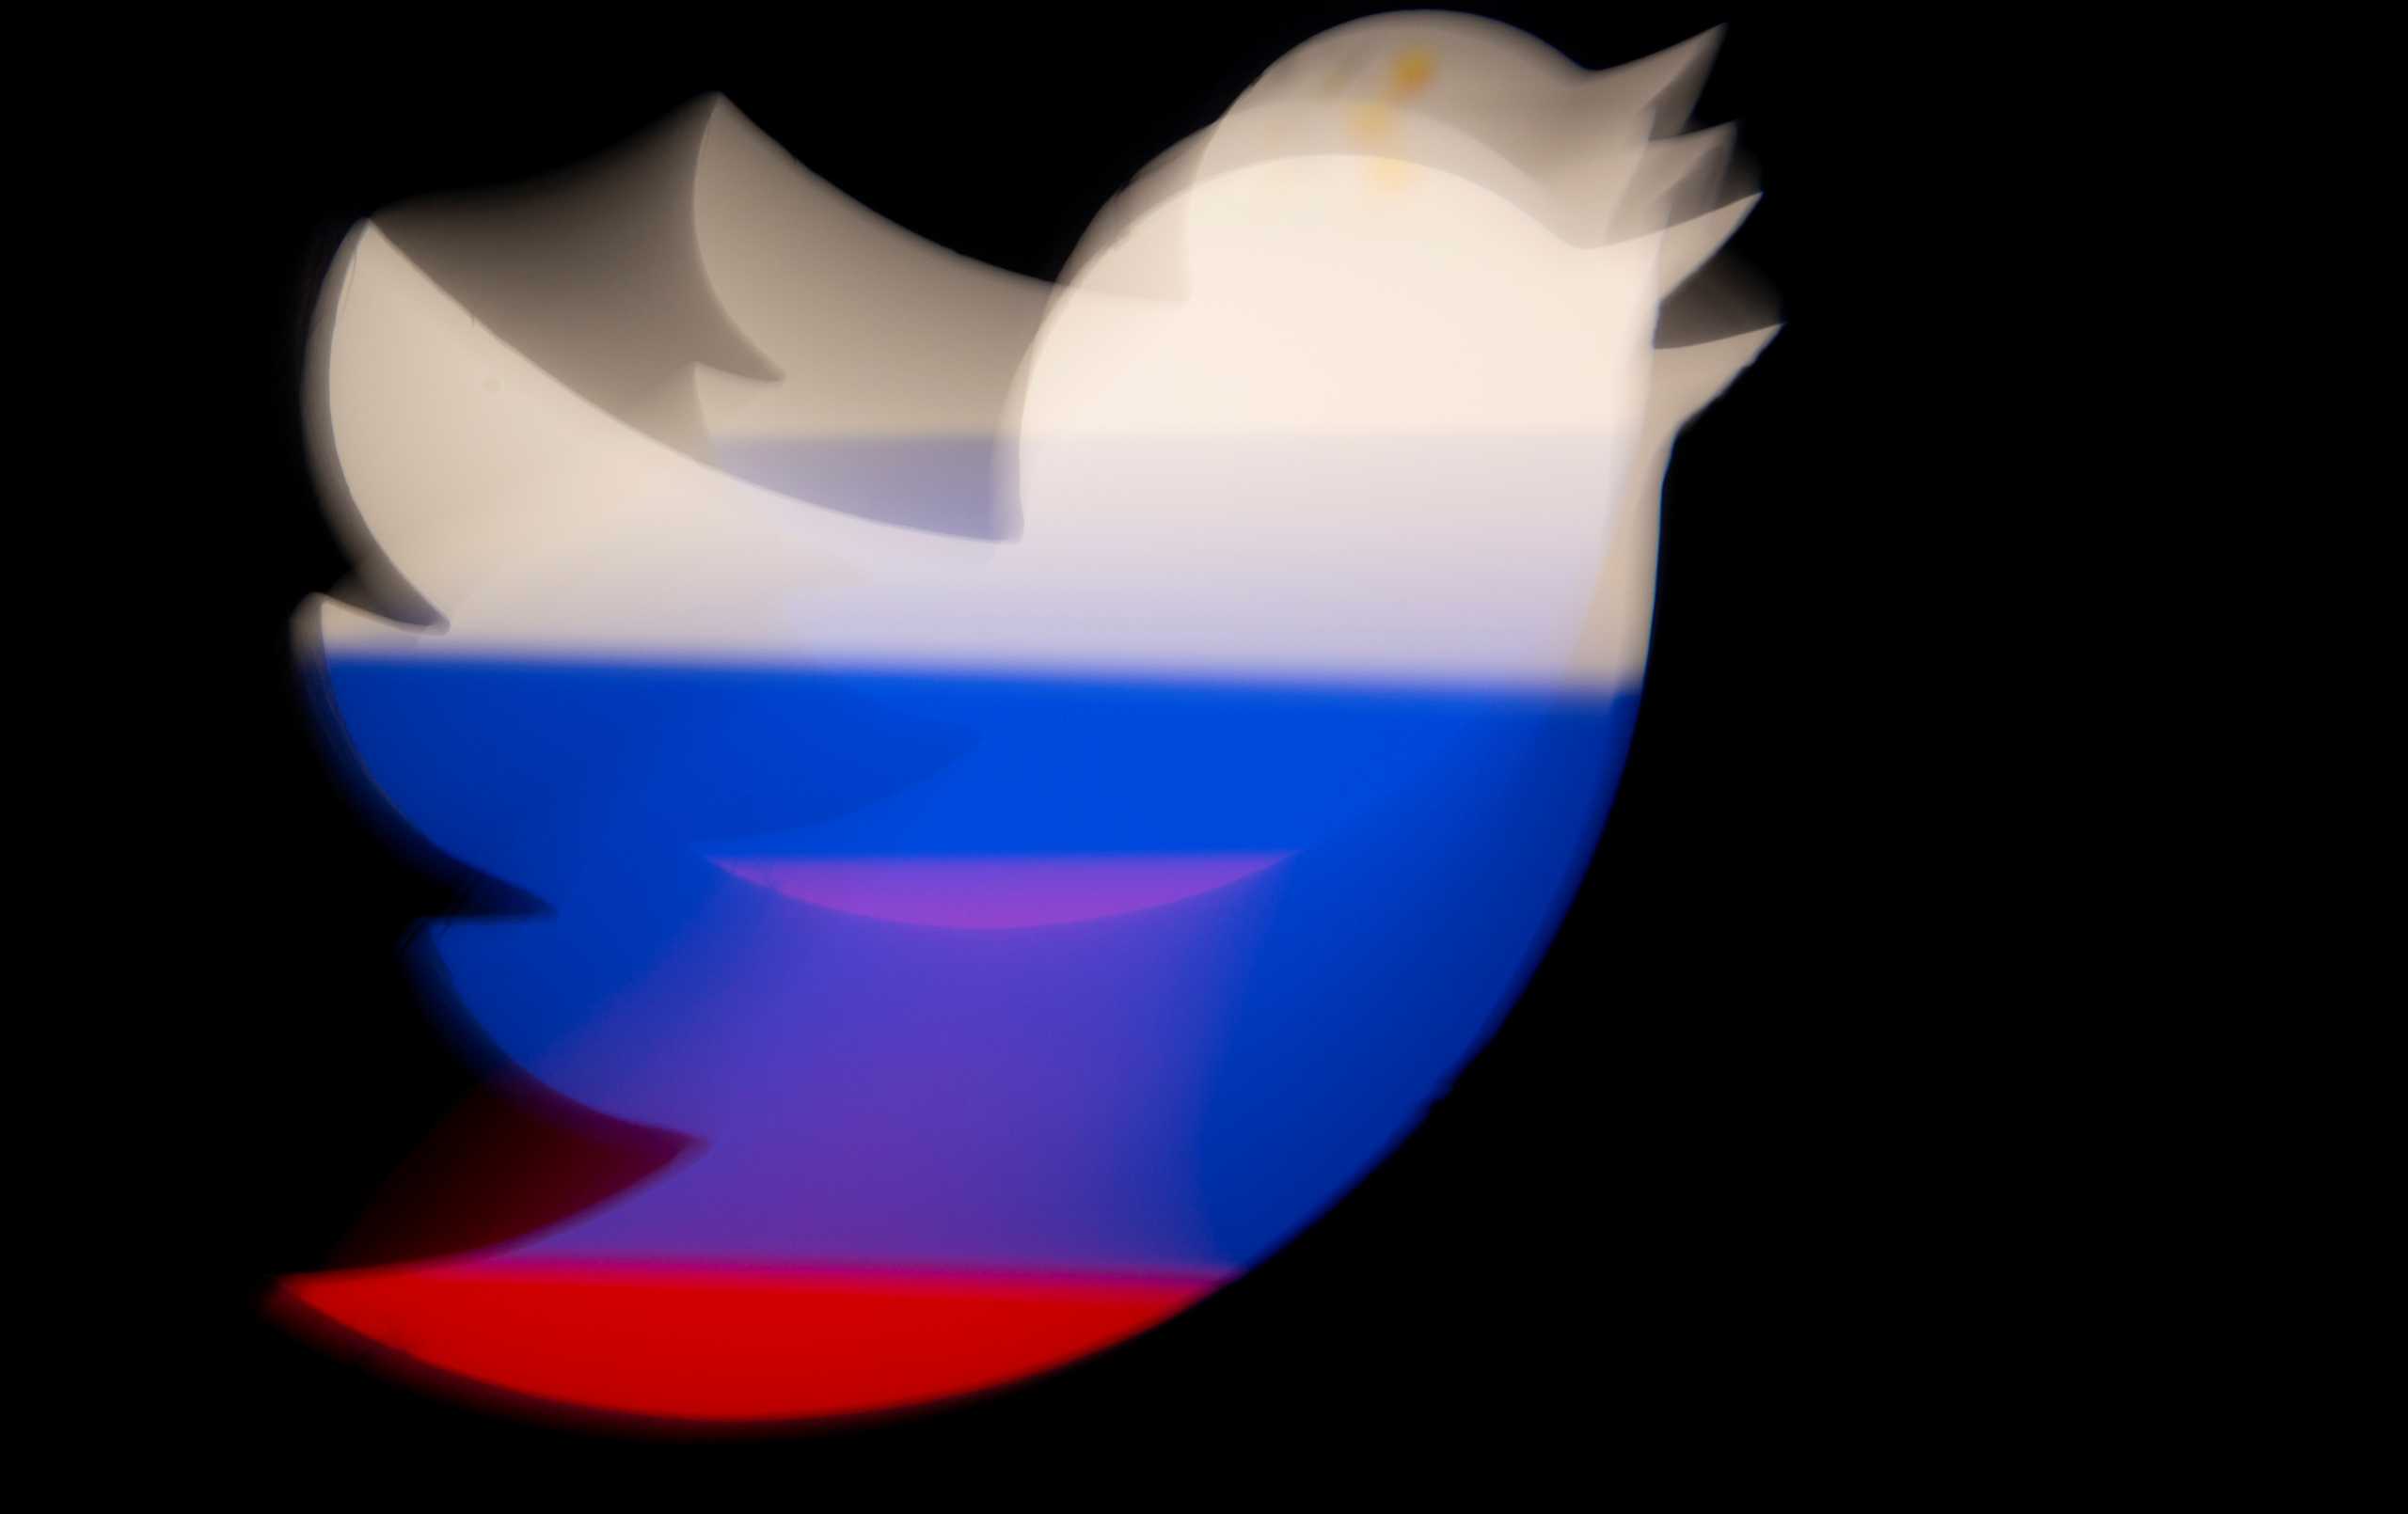 Ρωσία: Σκέψεις για μπλόκο του Twitter αν δεν απομακρύνει απαγορευμένο περιεχόμενο